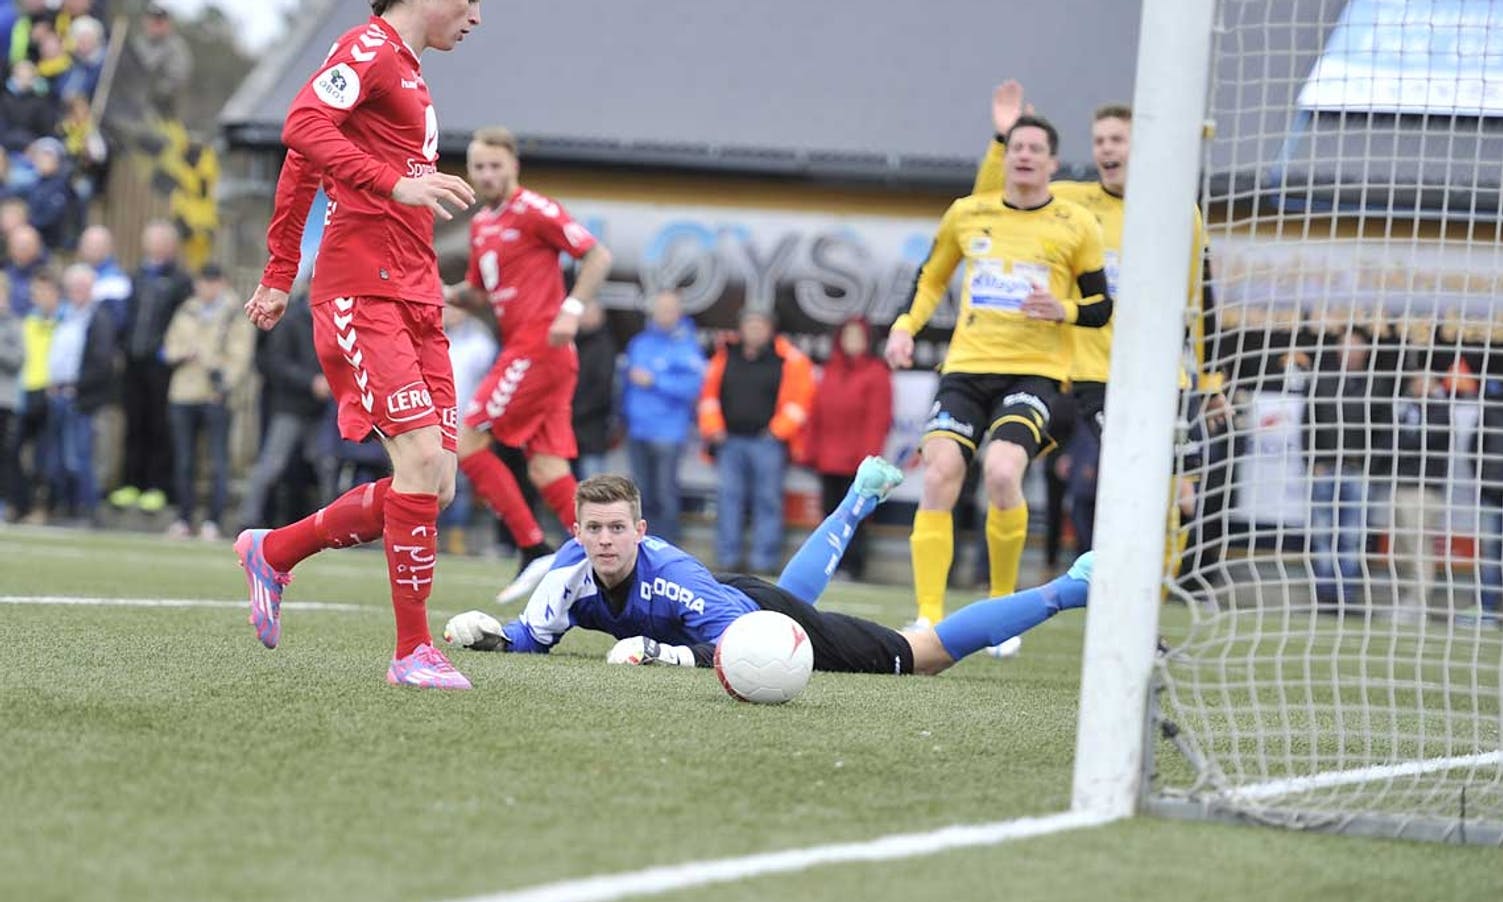 Skaanes sette lett inn 0-1 på bakerste stolpe. (Foto: Wim Hetland)